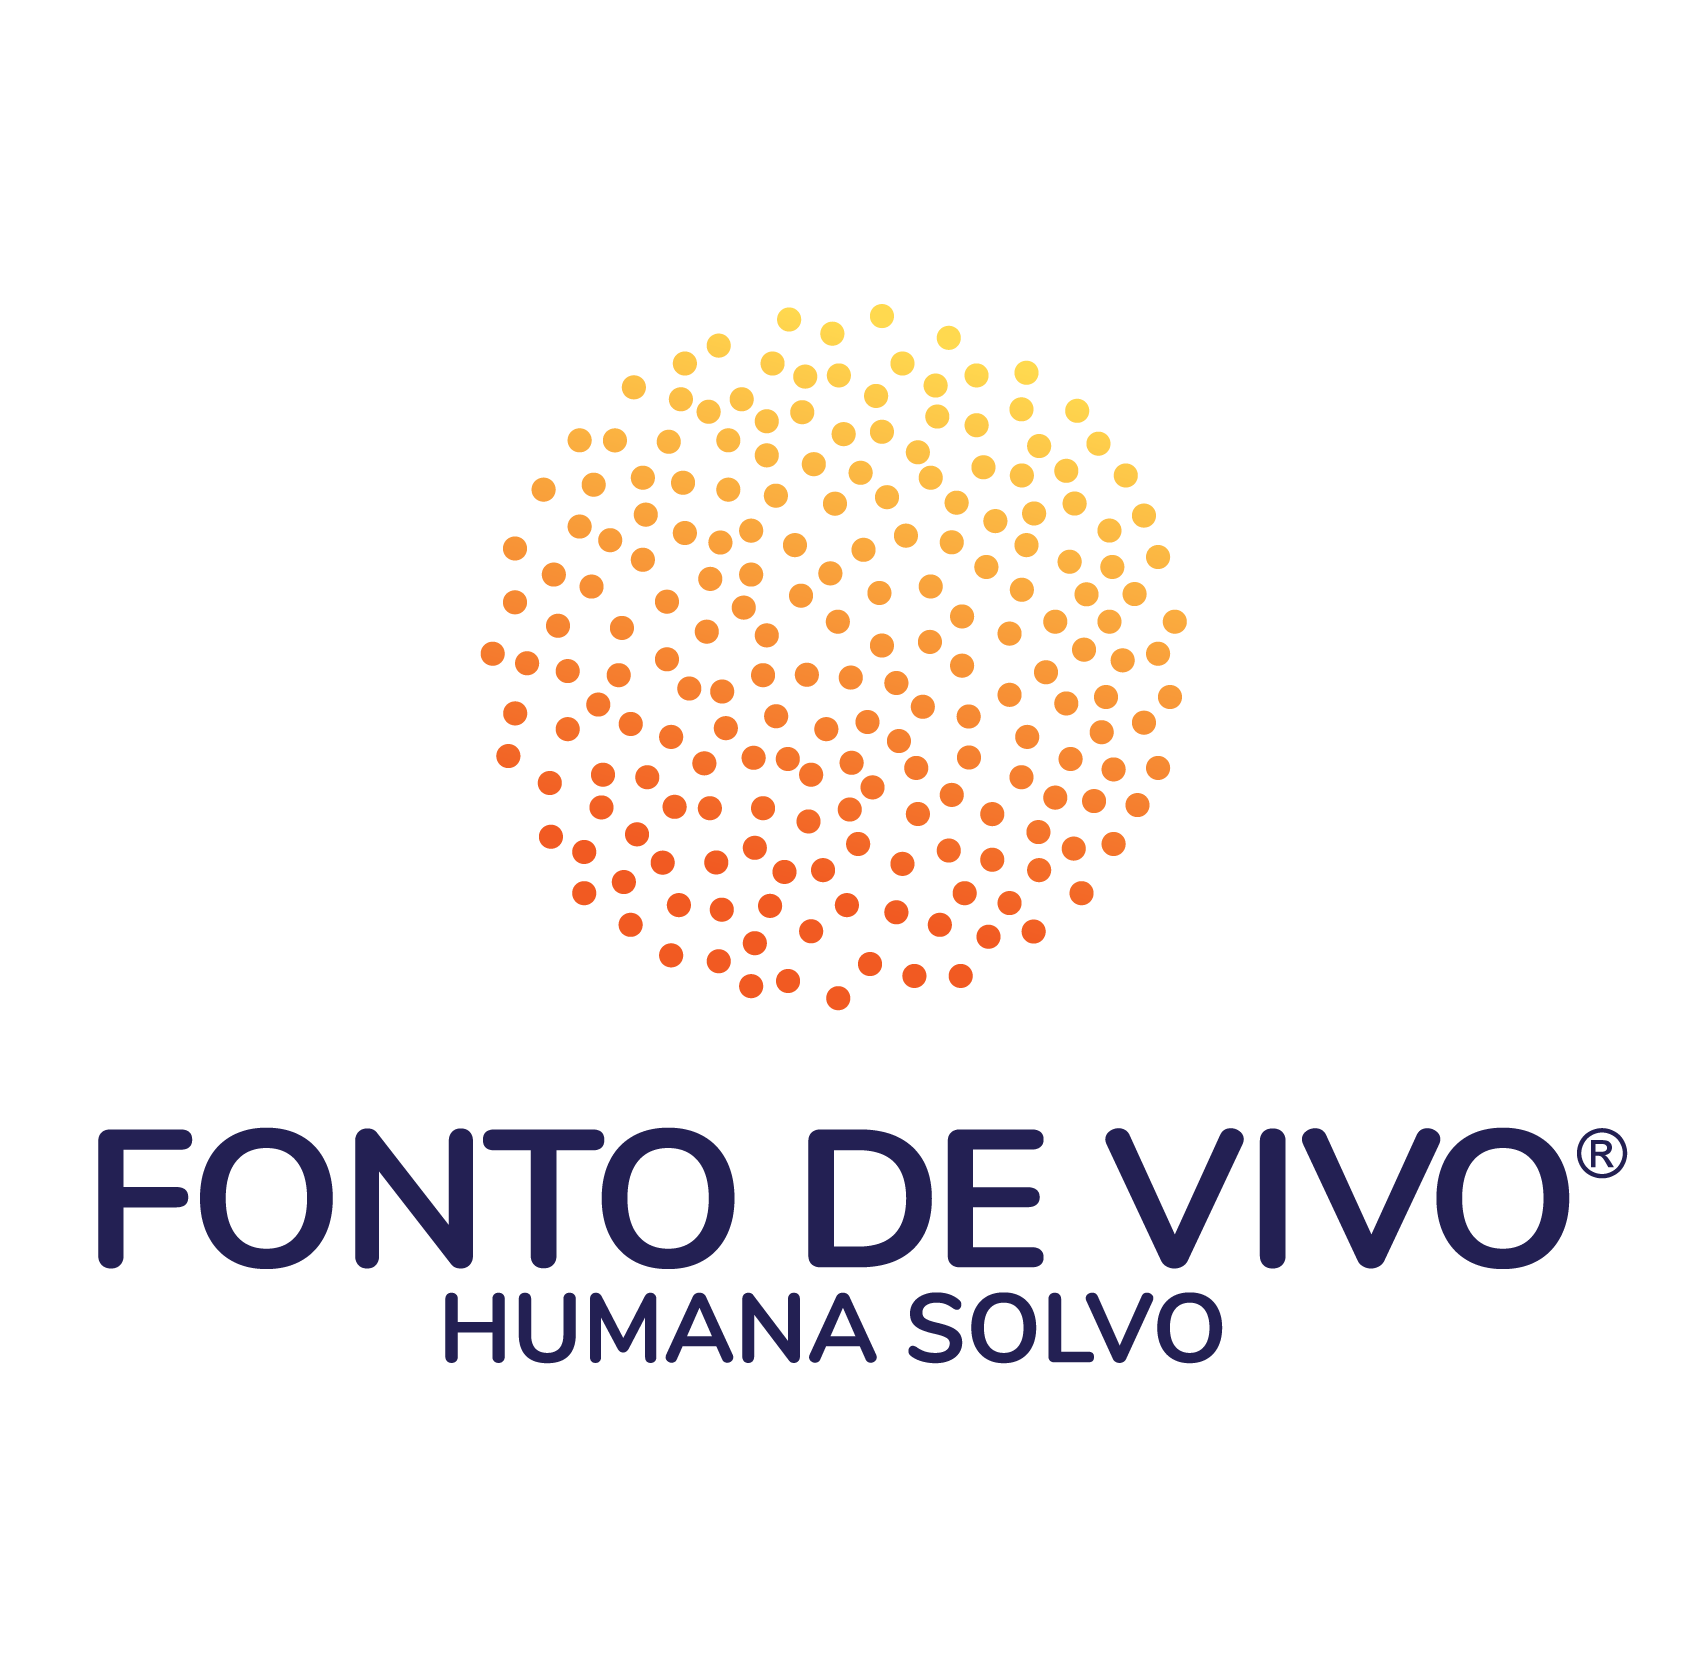 FONTO DE VIVO (nouvelle fenêtre)